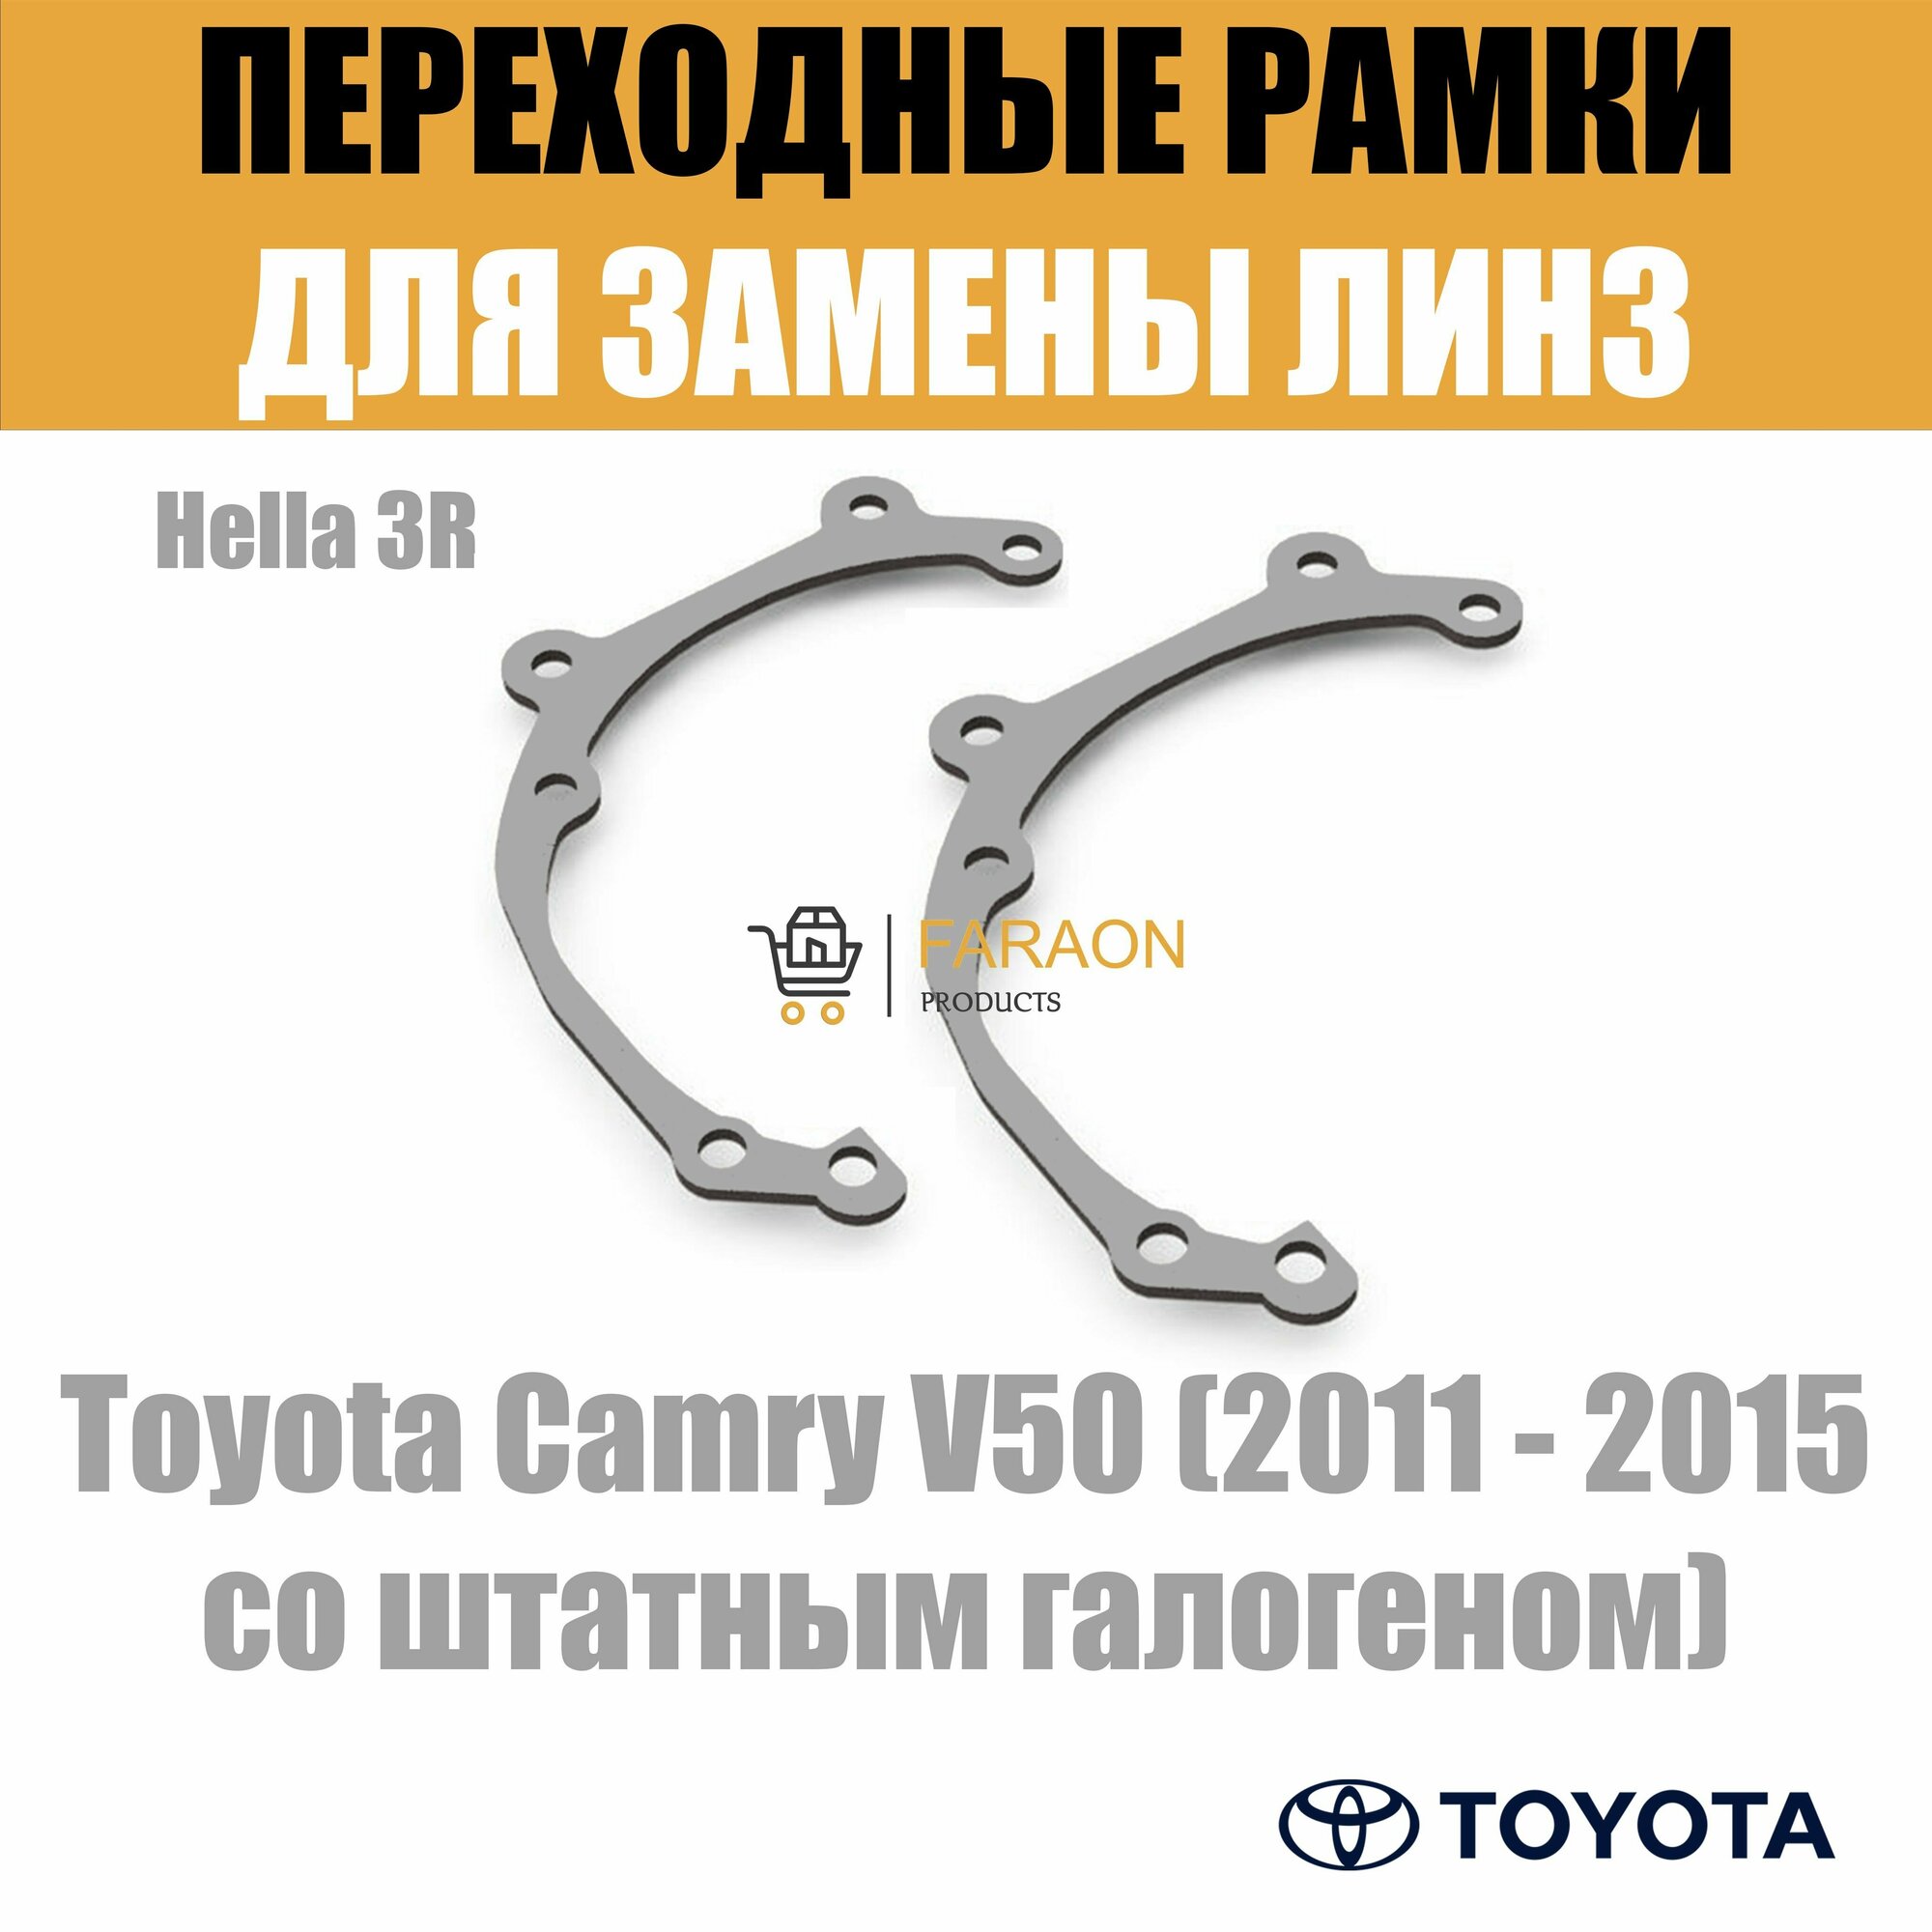 Переходные рамки для Toyota Camry V50 (2011 - 2015 со штатным галогеном) под модуль Hella 3R/Hella 3 (Комплект 2шт)